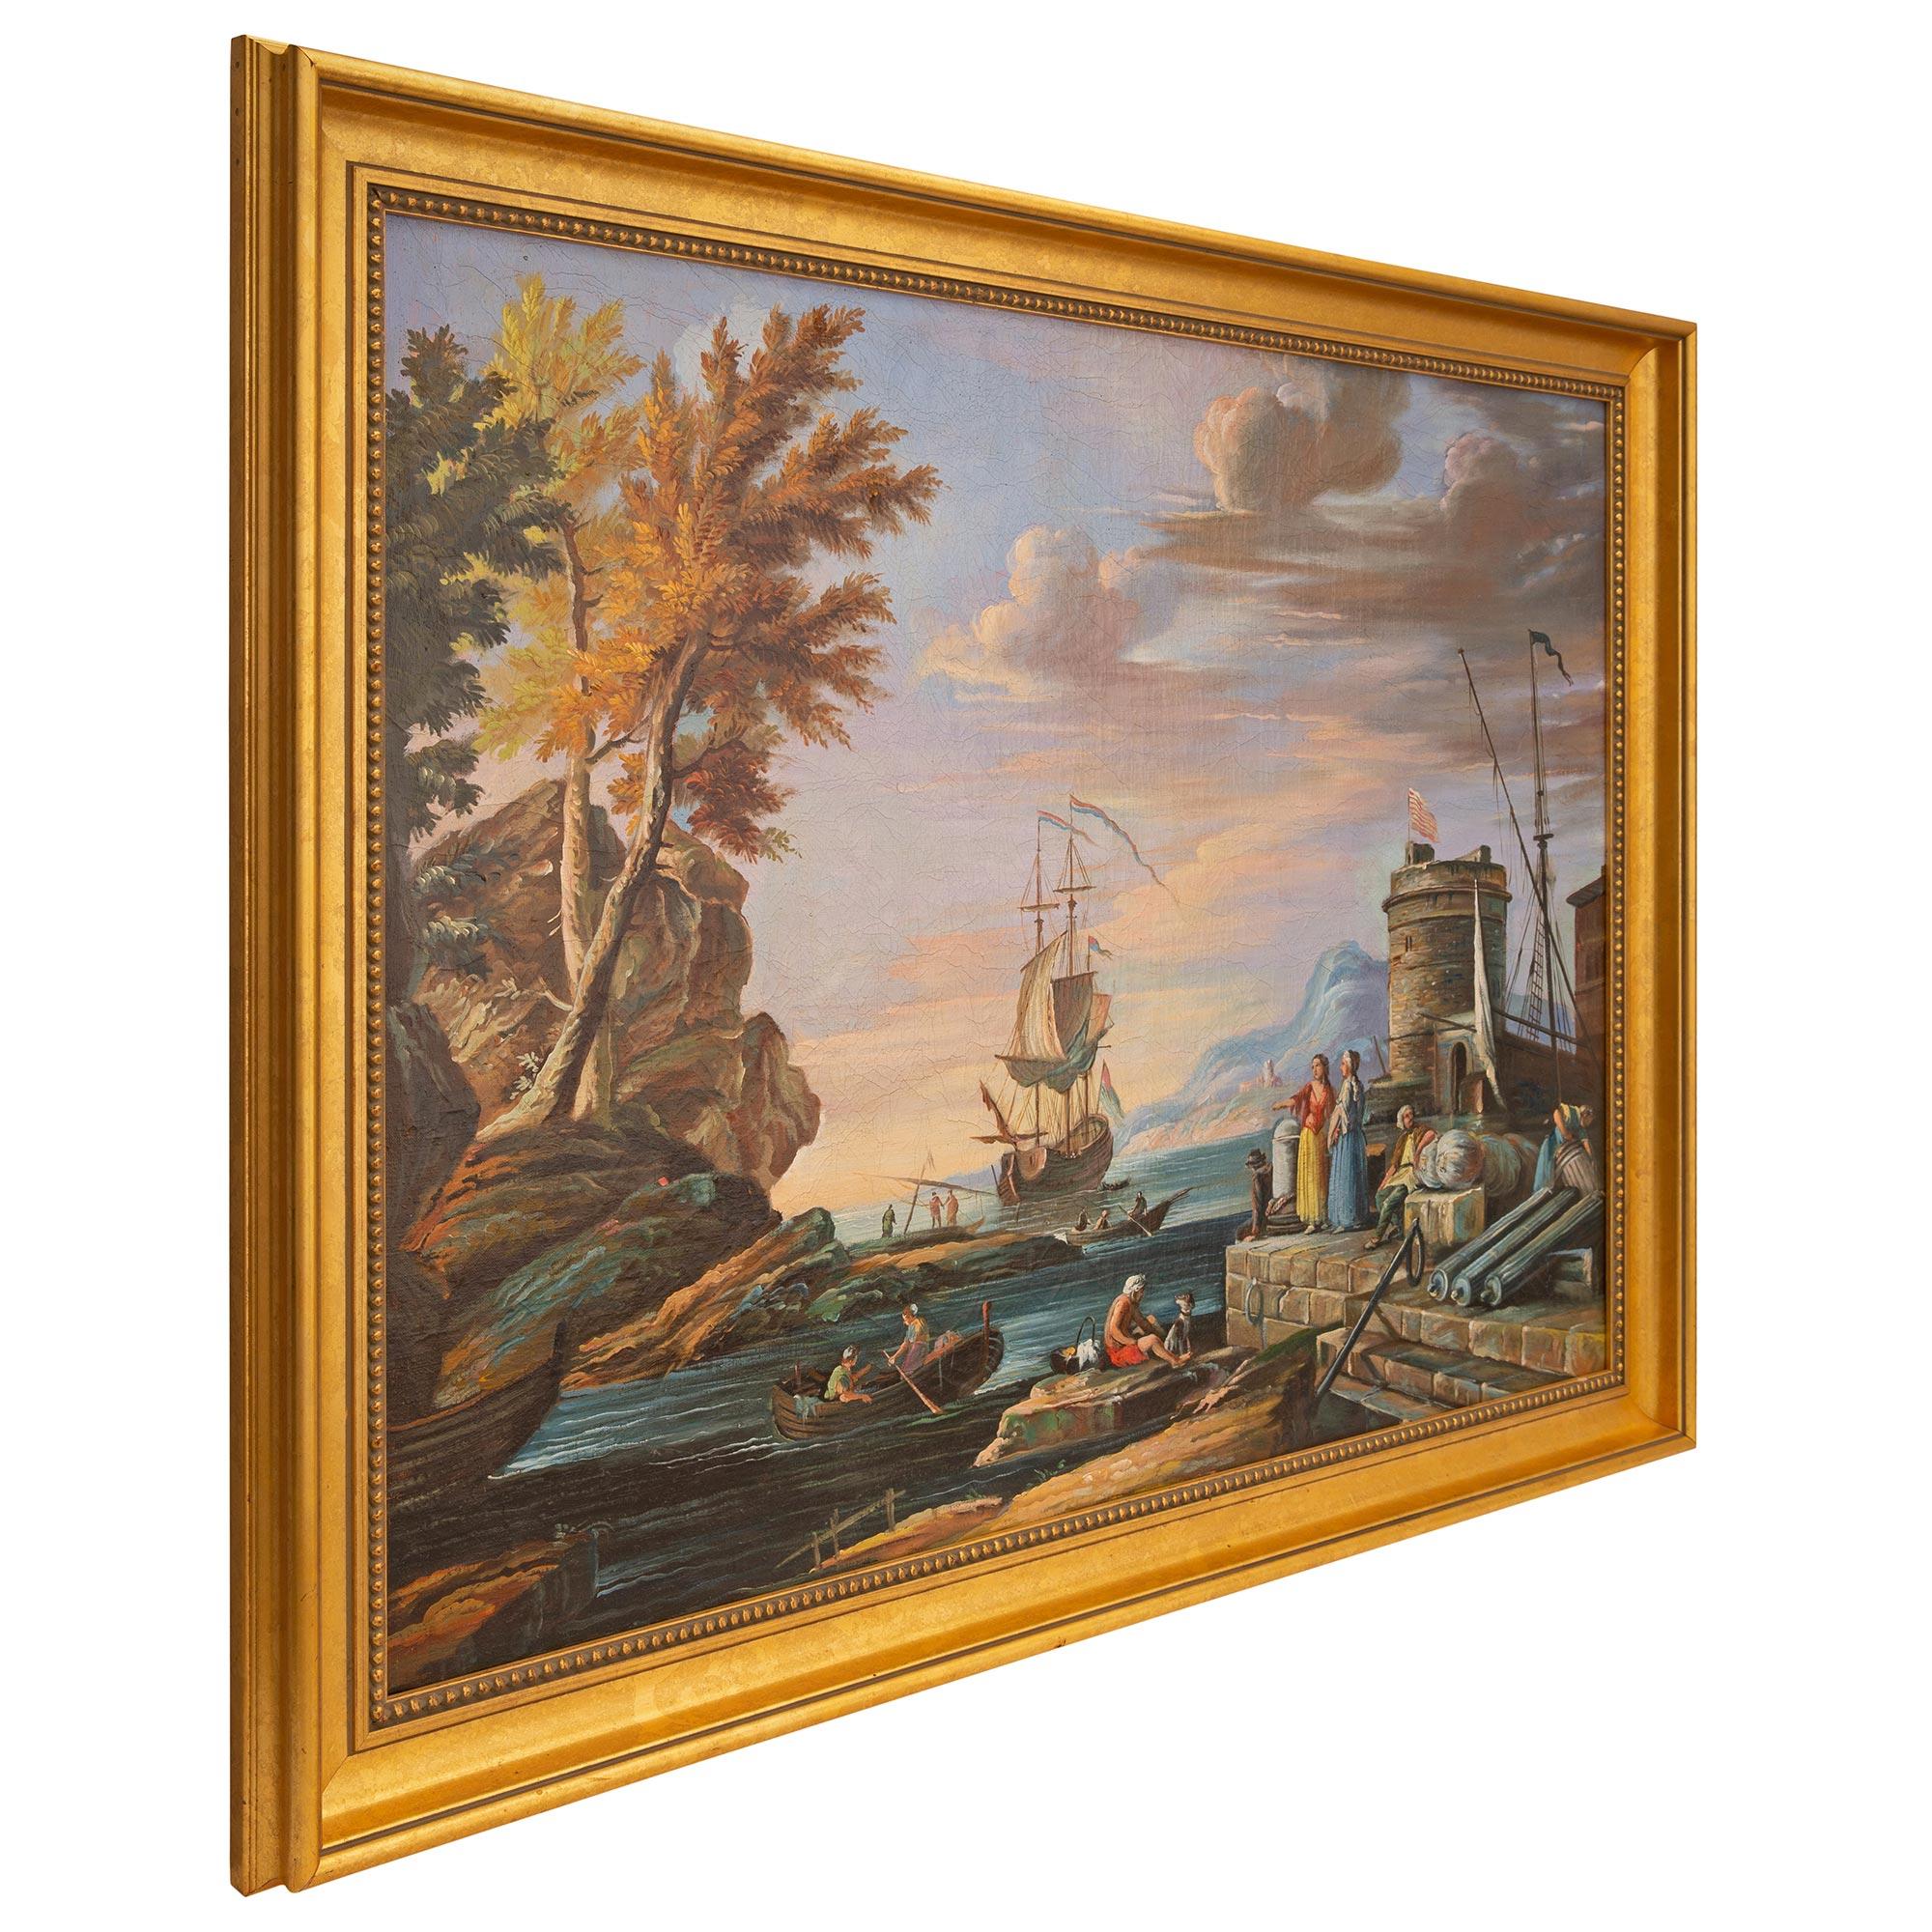 Ein wunderschönes italienisches Ölgemälde aus dem 18. Jahrhundert in einem Rahmen aus Goldholz. Das Gemälde zeigt eine ruhige Bucht in der Abenddämmerung mit einem verankerten Segelboot in der Mitte und den schönen italienischen Bergen im